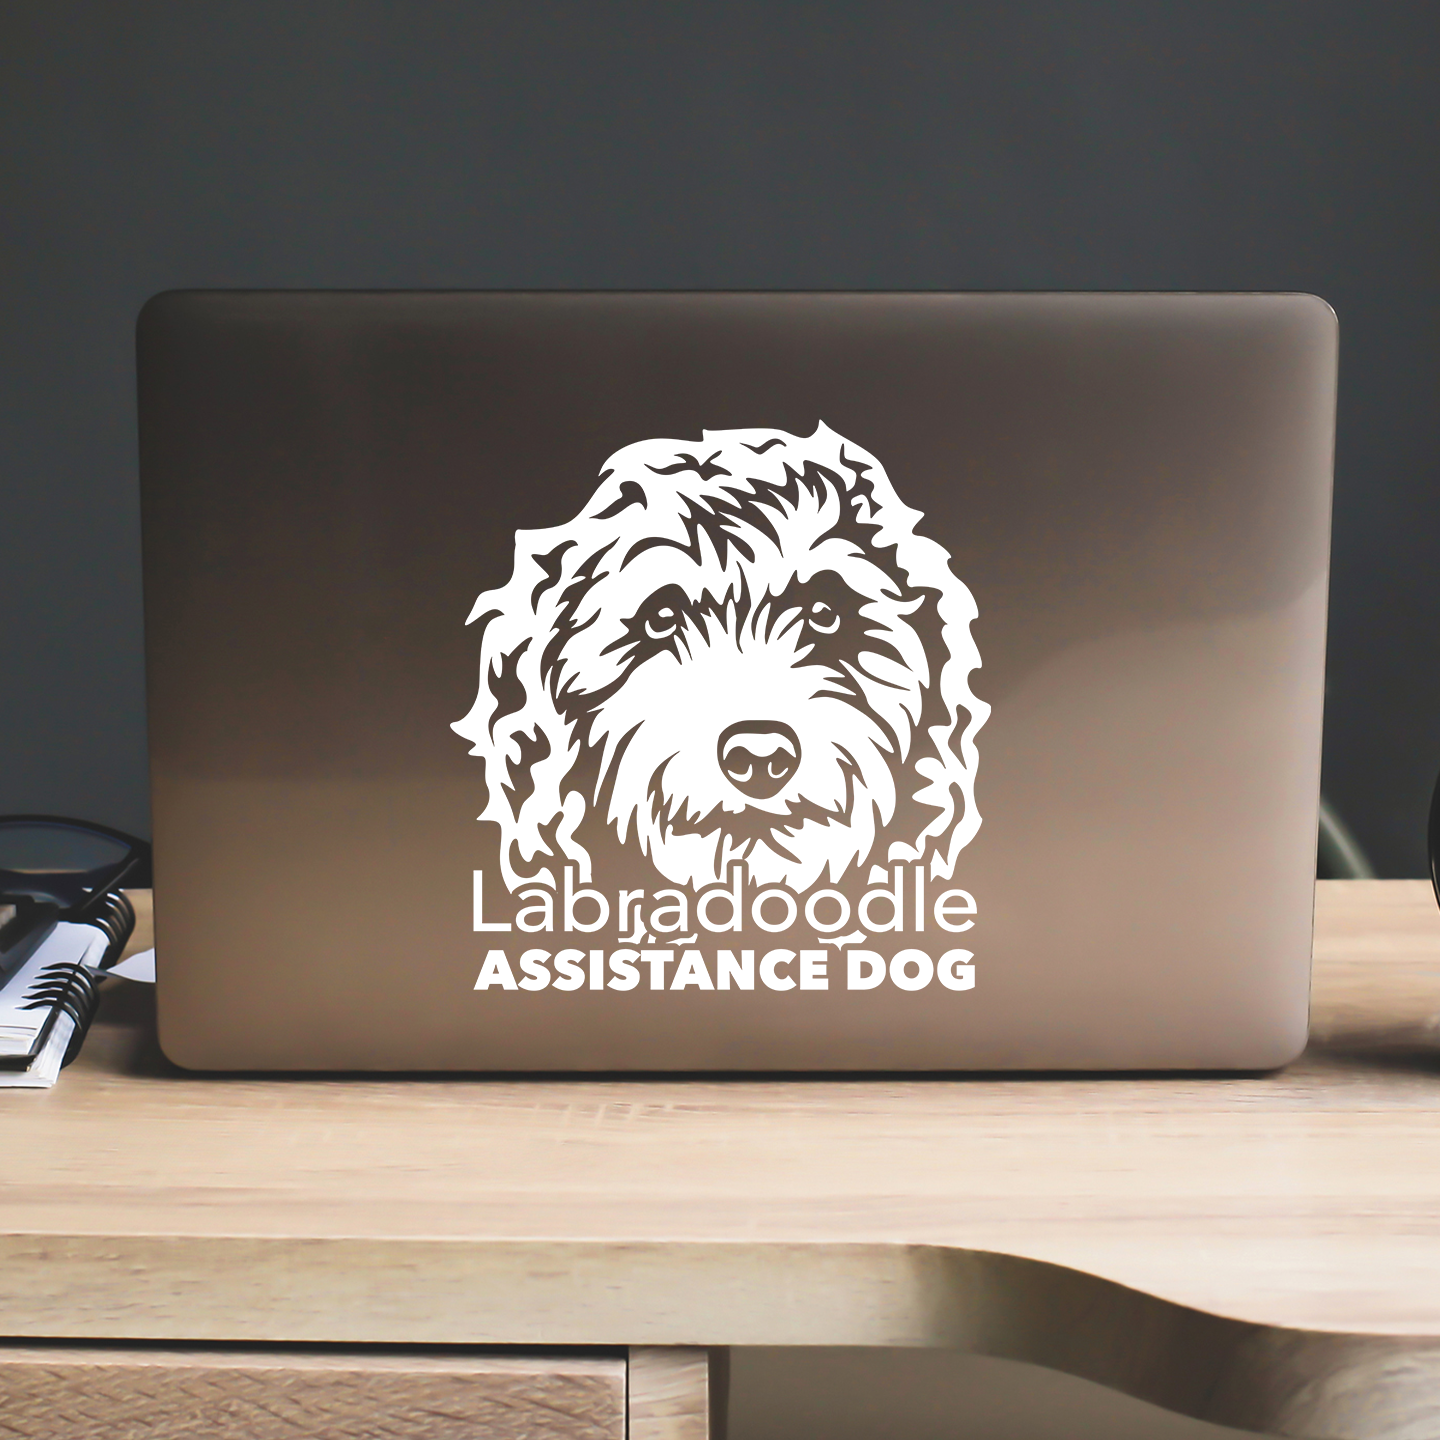 Labradoodle Assistance Dog Sticker